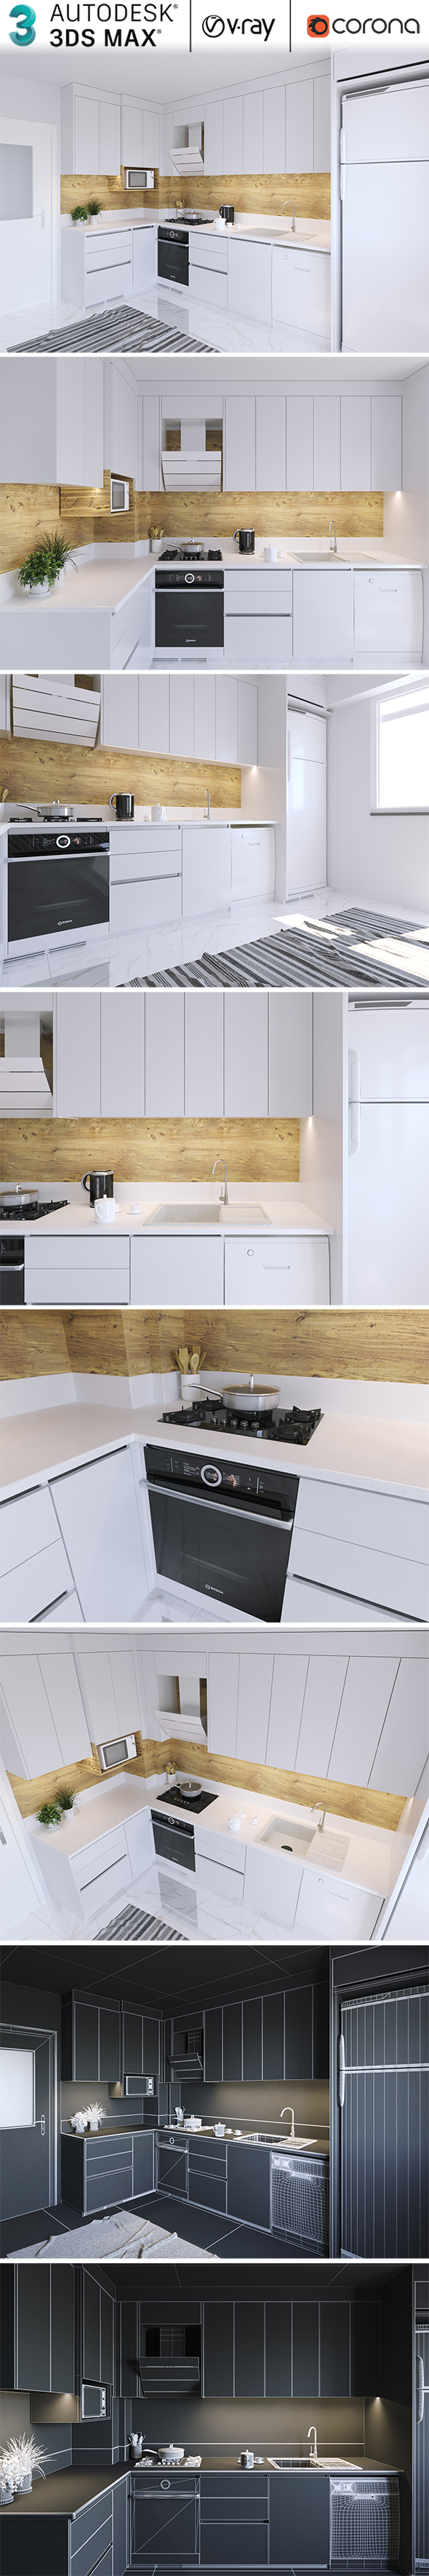 Modern Kitchen Realistic - 3Docean 31190857